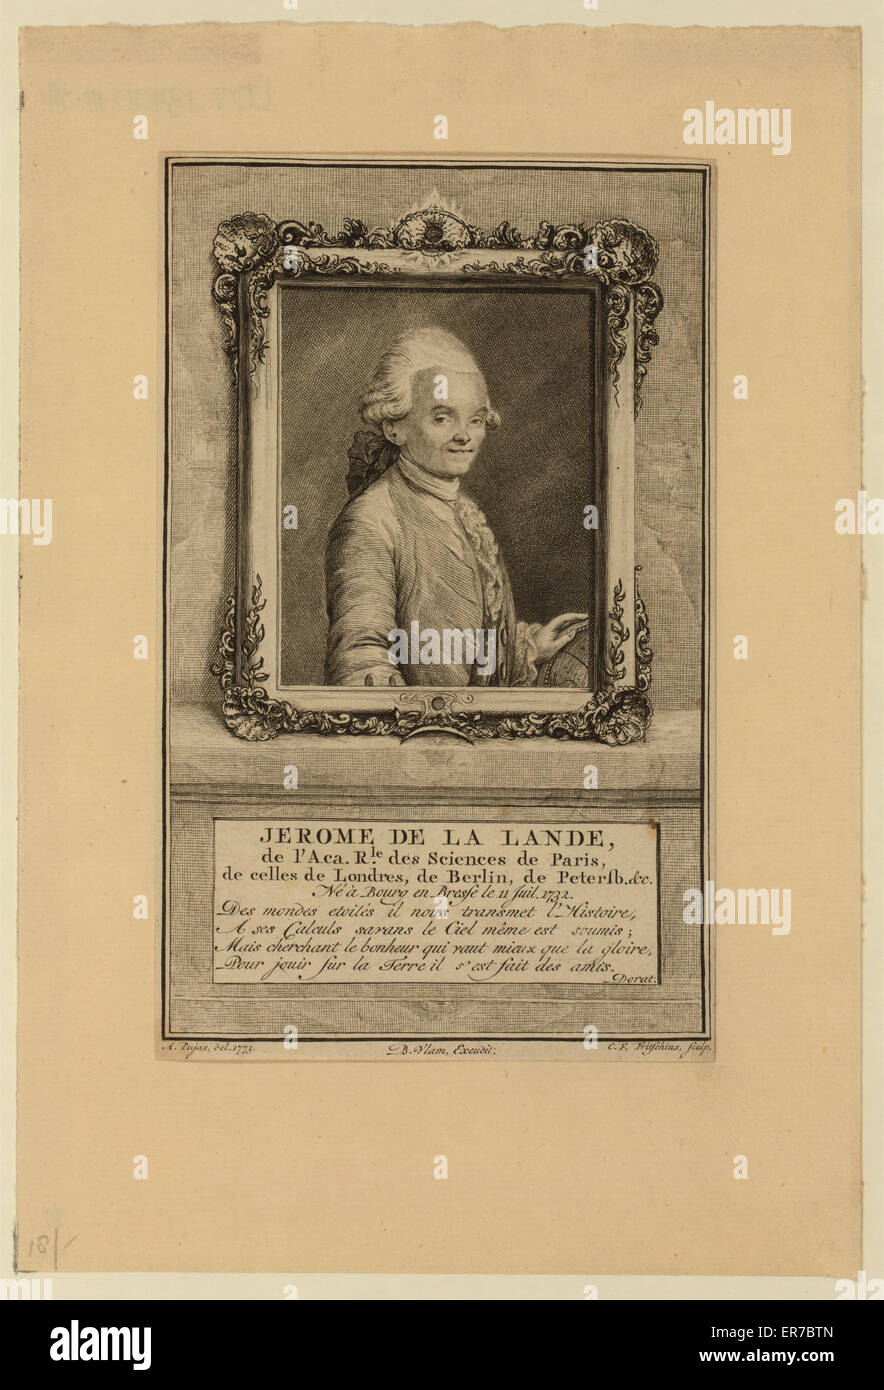 Jerome de La Lande, de l'Aca. rle. des sciences de Paris, de Stock Photo